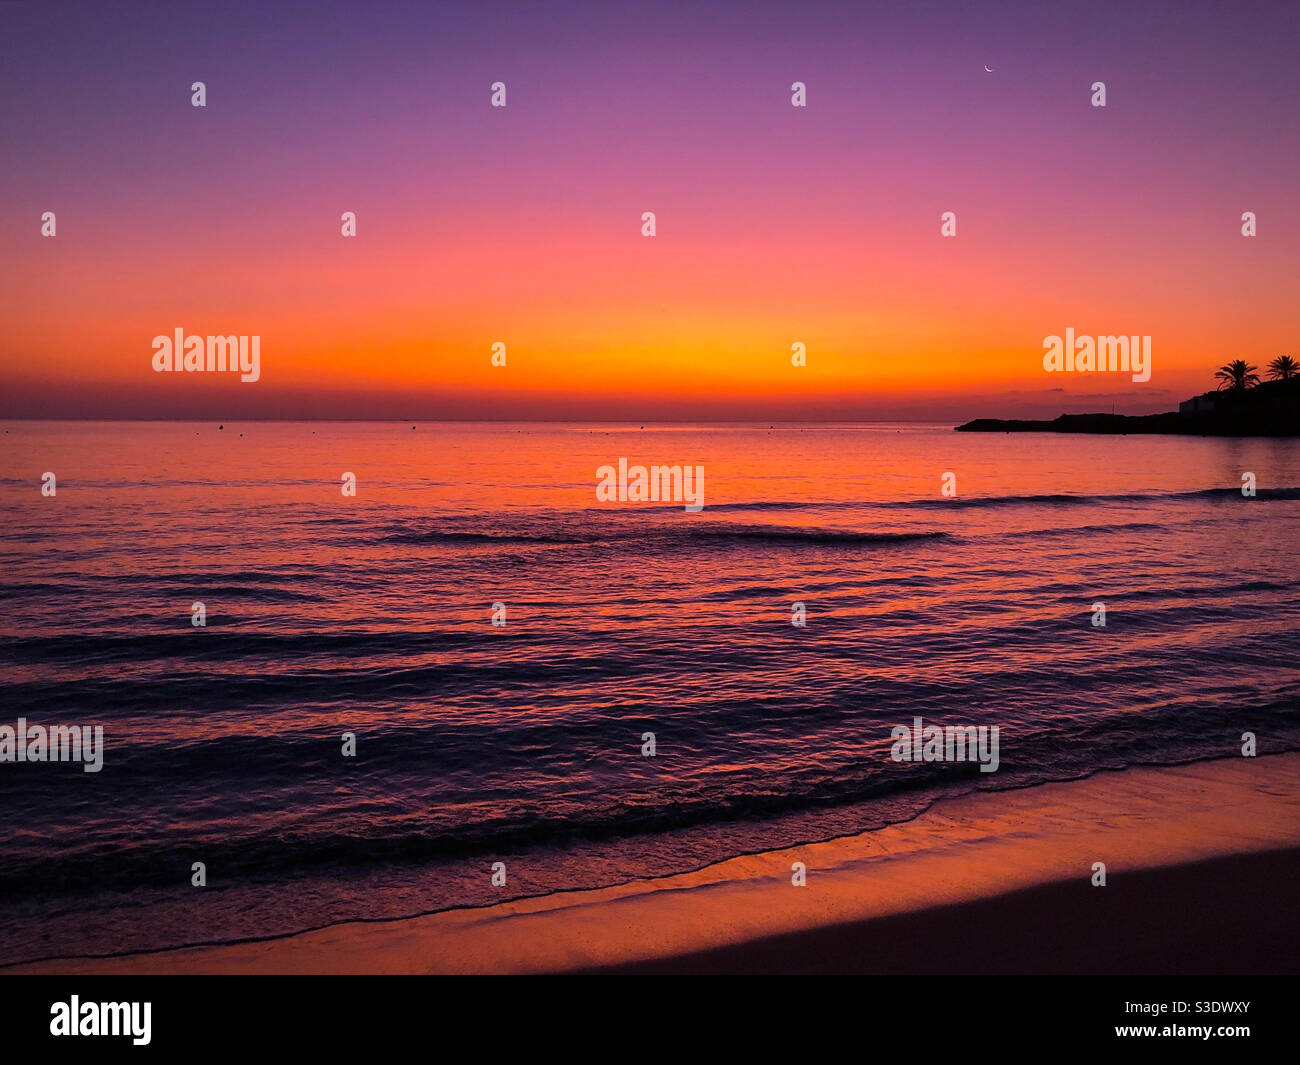 Spettacolare paesaggio marino all'alba, vista dalla spiaggia all'orizzonte Foto Stock